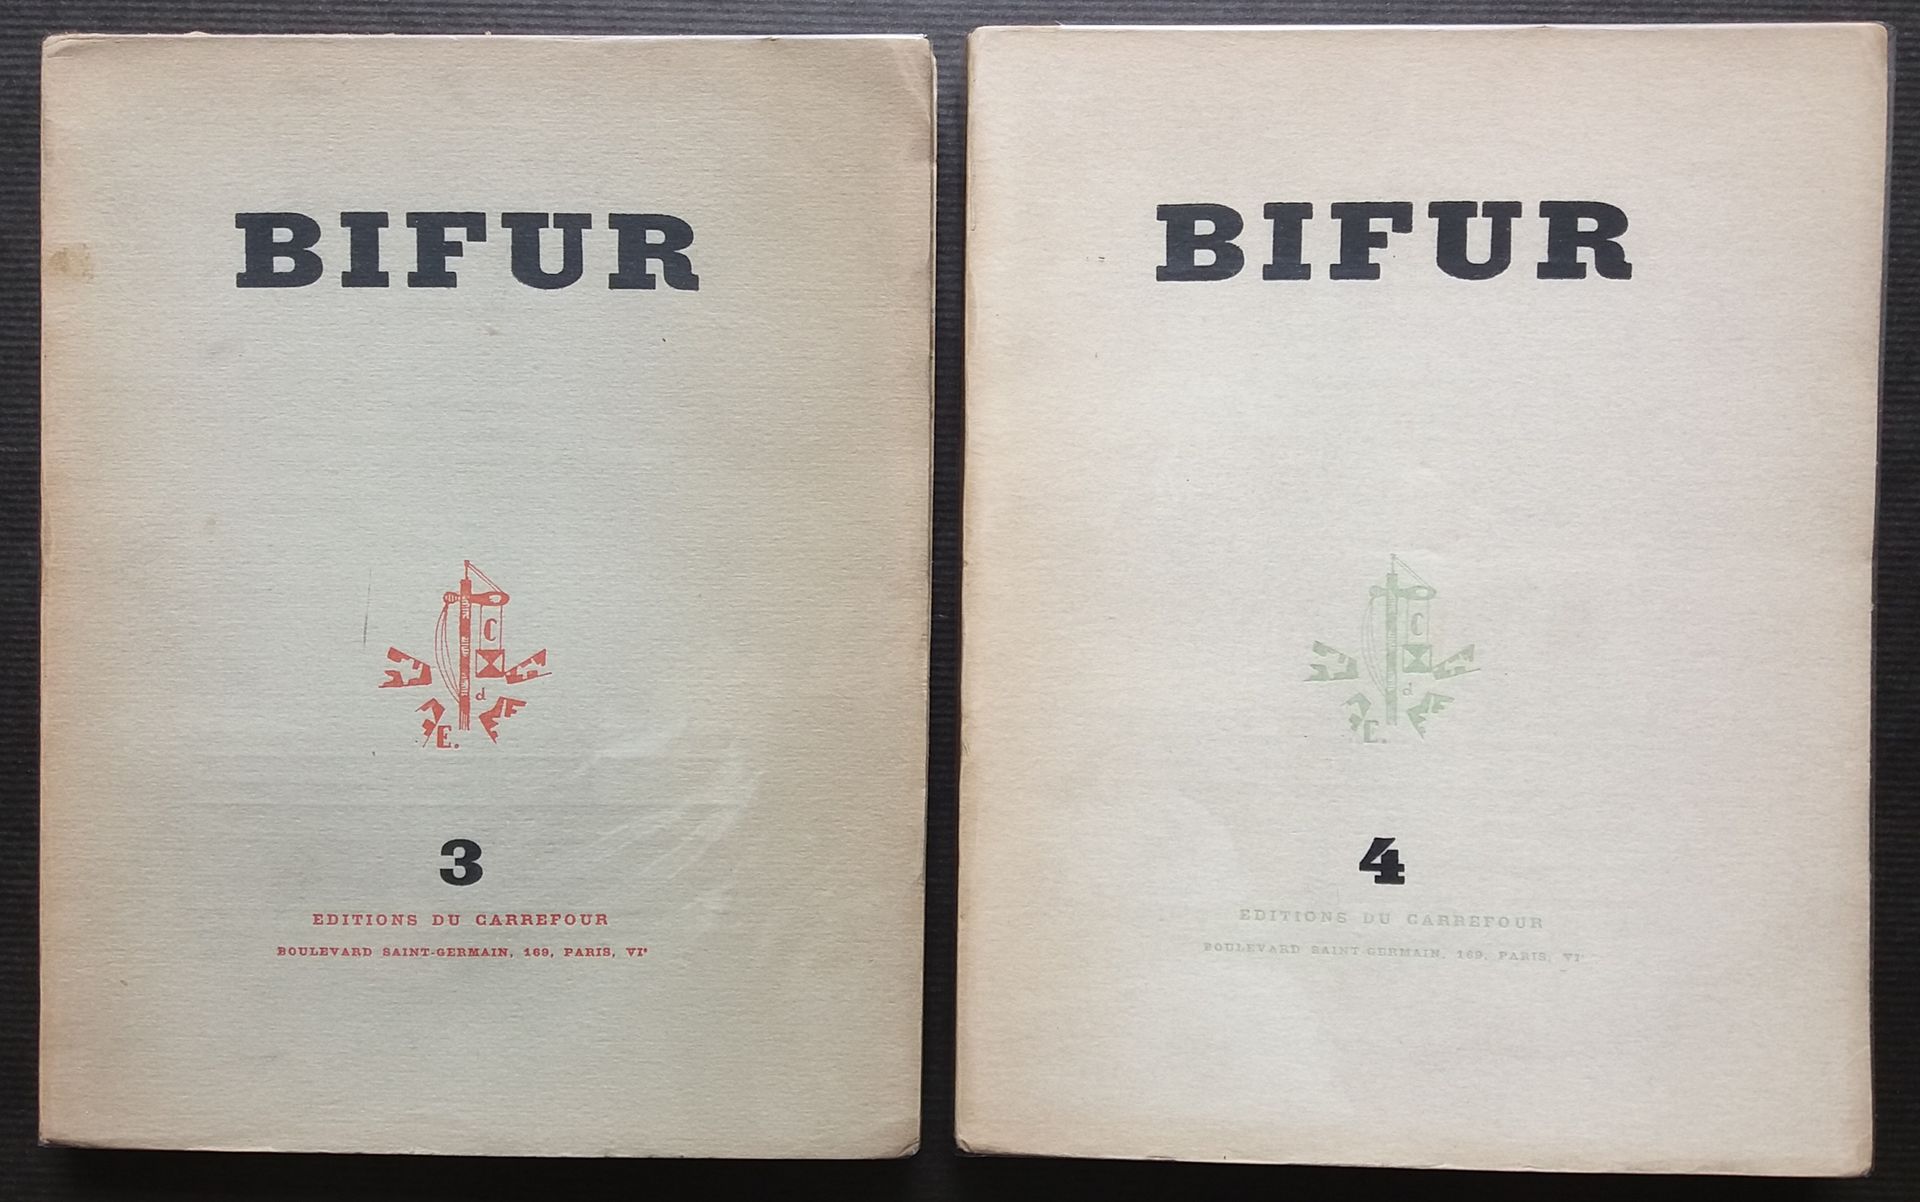 Null [ART - BIFUR]
2 ouvrages.

*BIFUR n°3
Éditions du Carrefour, 1929. 192 pp. &hellip;